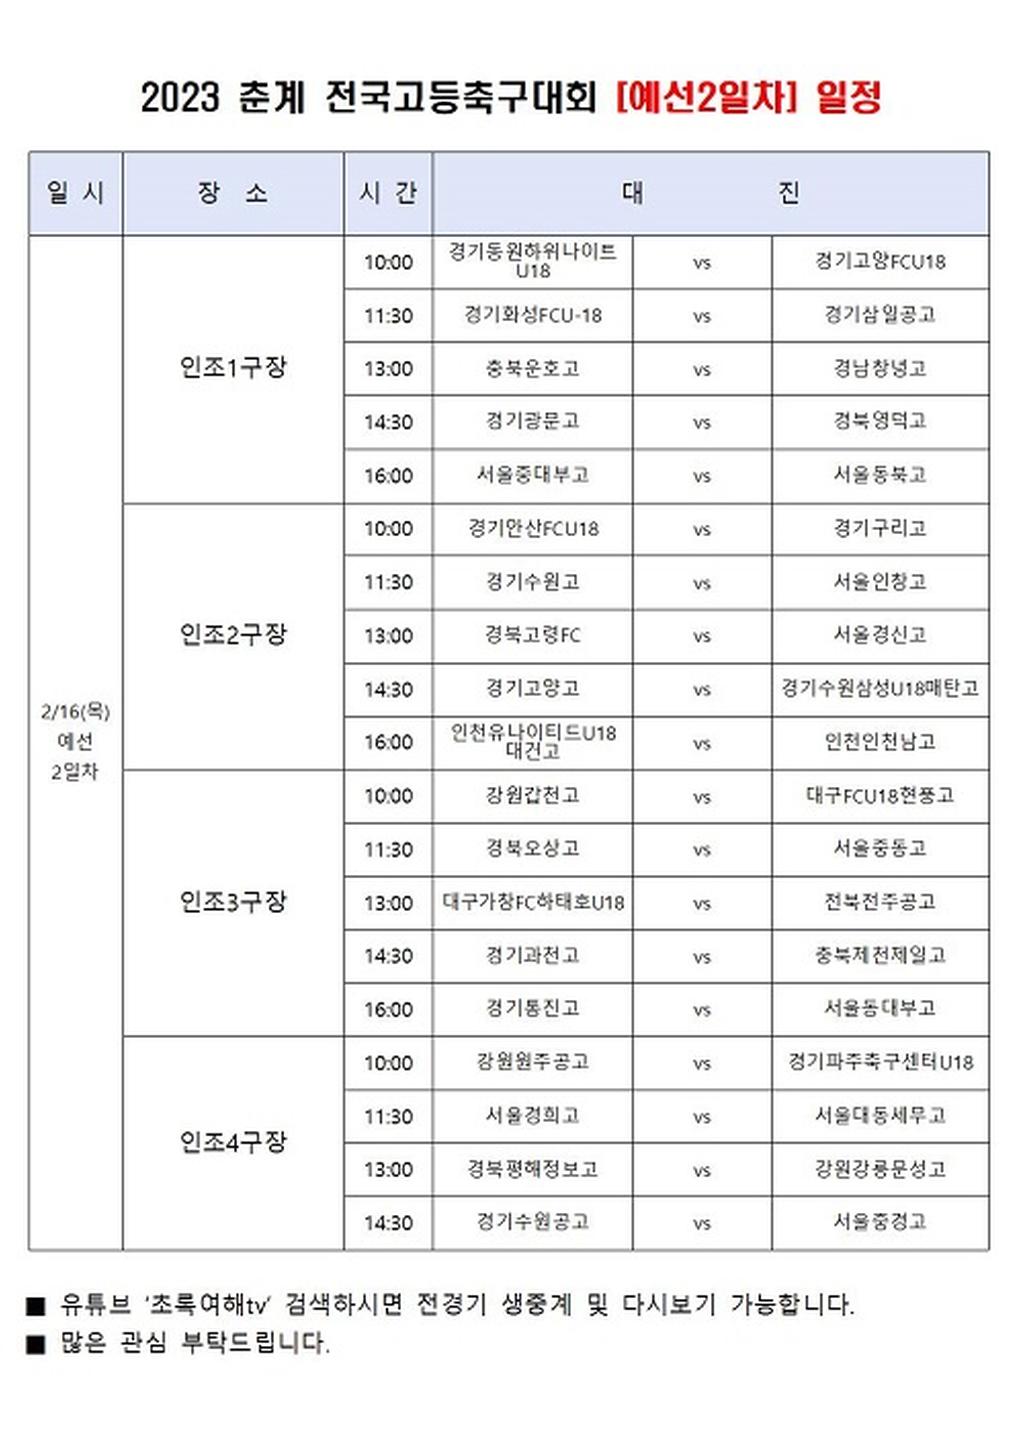 2023 춘계 전국고등축구대회 경기 일정(2.16.)